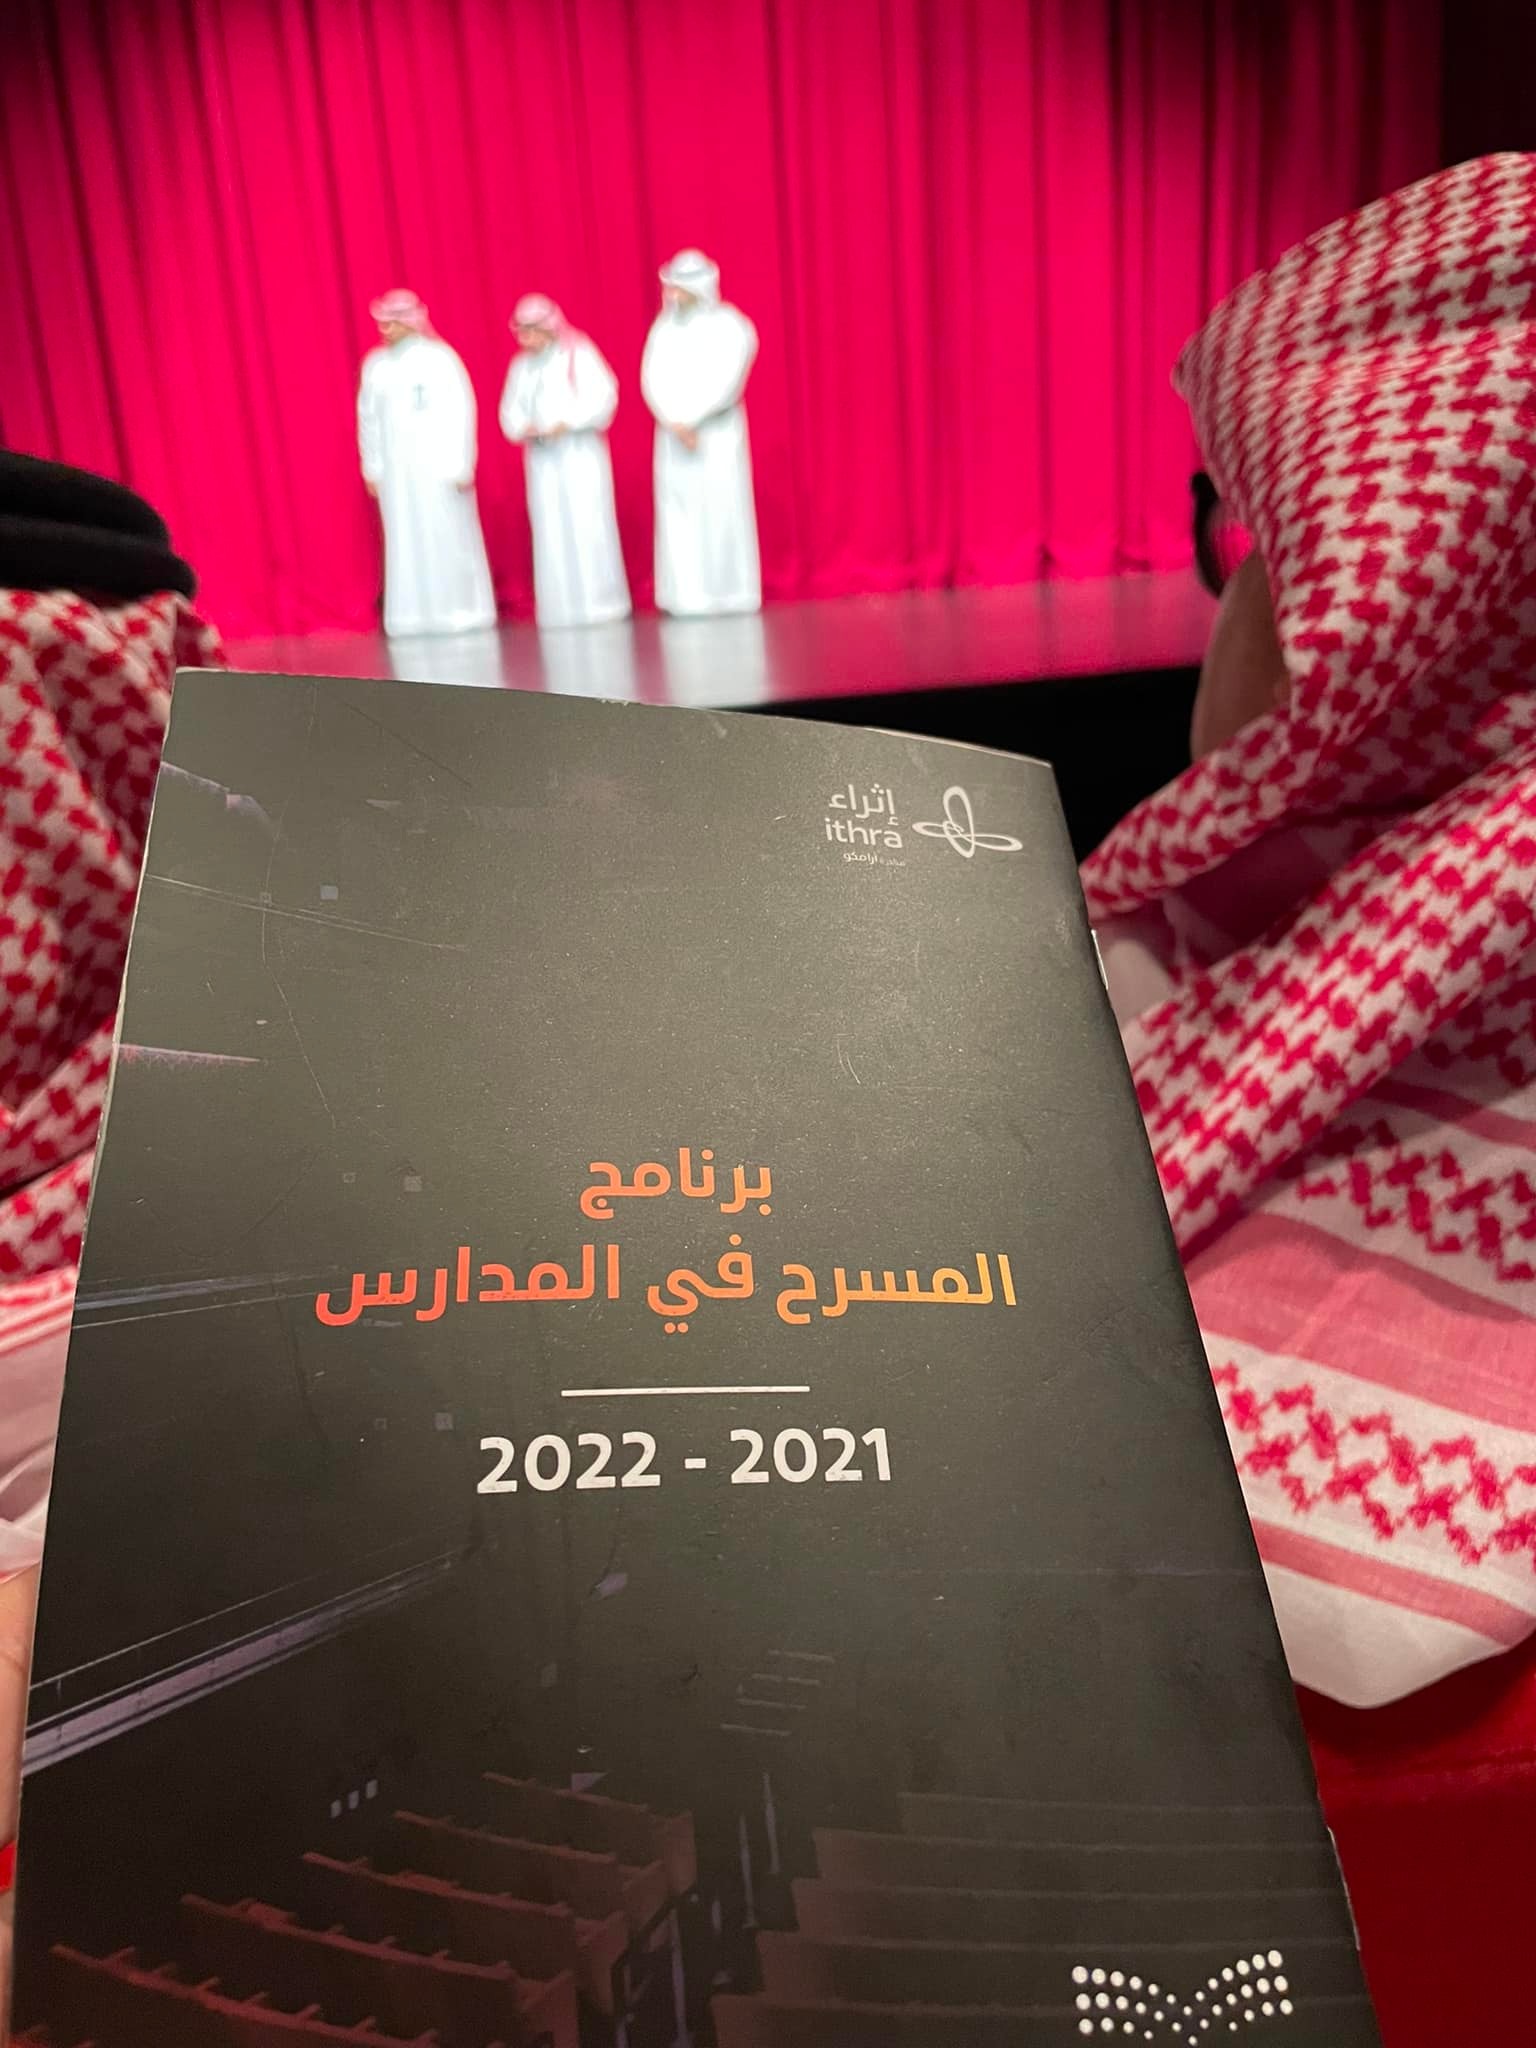 الفنان المسرحي سامي الزهراني مركز الملك عبدالعزيز الثقافي العالمي ( إثراء )